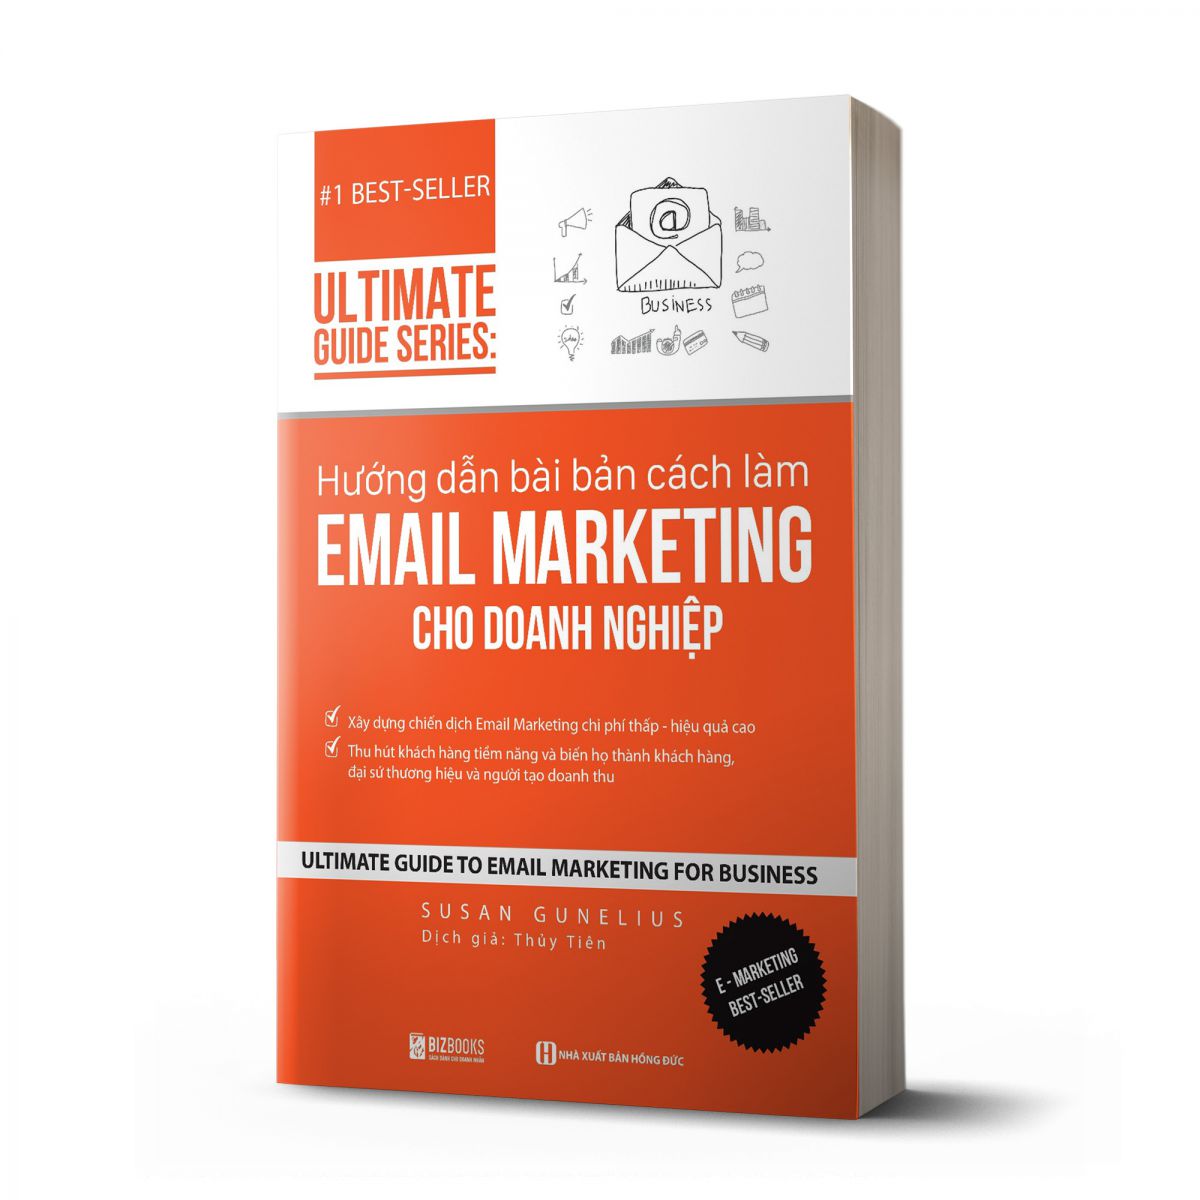 Hướng dẫn bài bản cách làm Email Marketing cho doanh nghiệp | Ultimate Guide Series 1